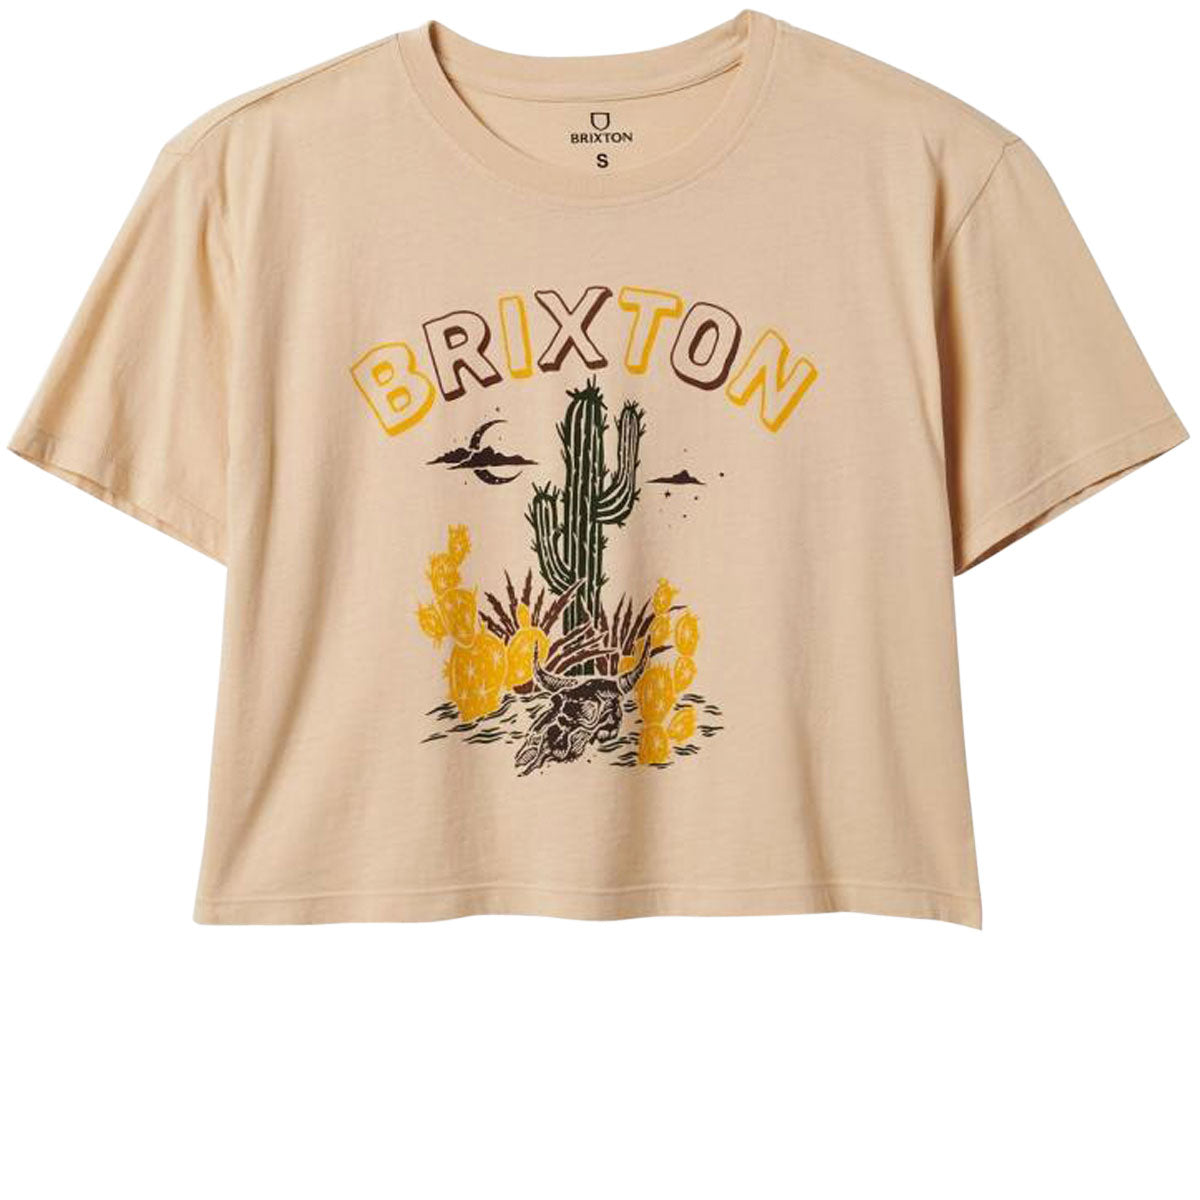 Brixton Womens Cactus Boxy T-Shirt - Biscotti image 1